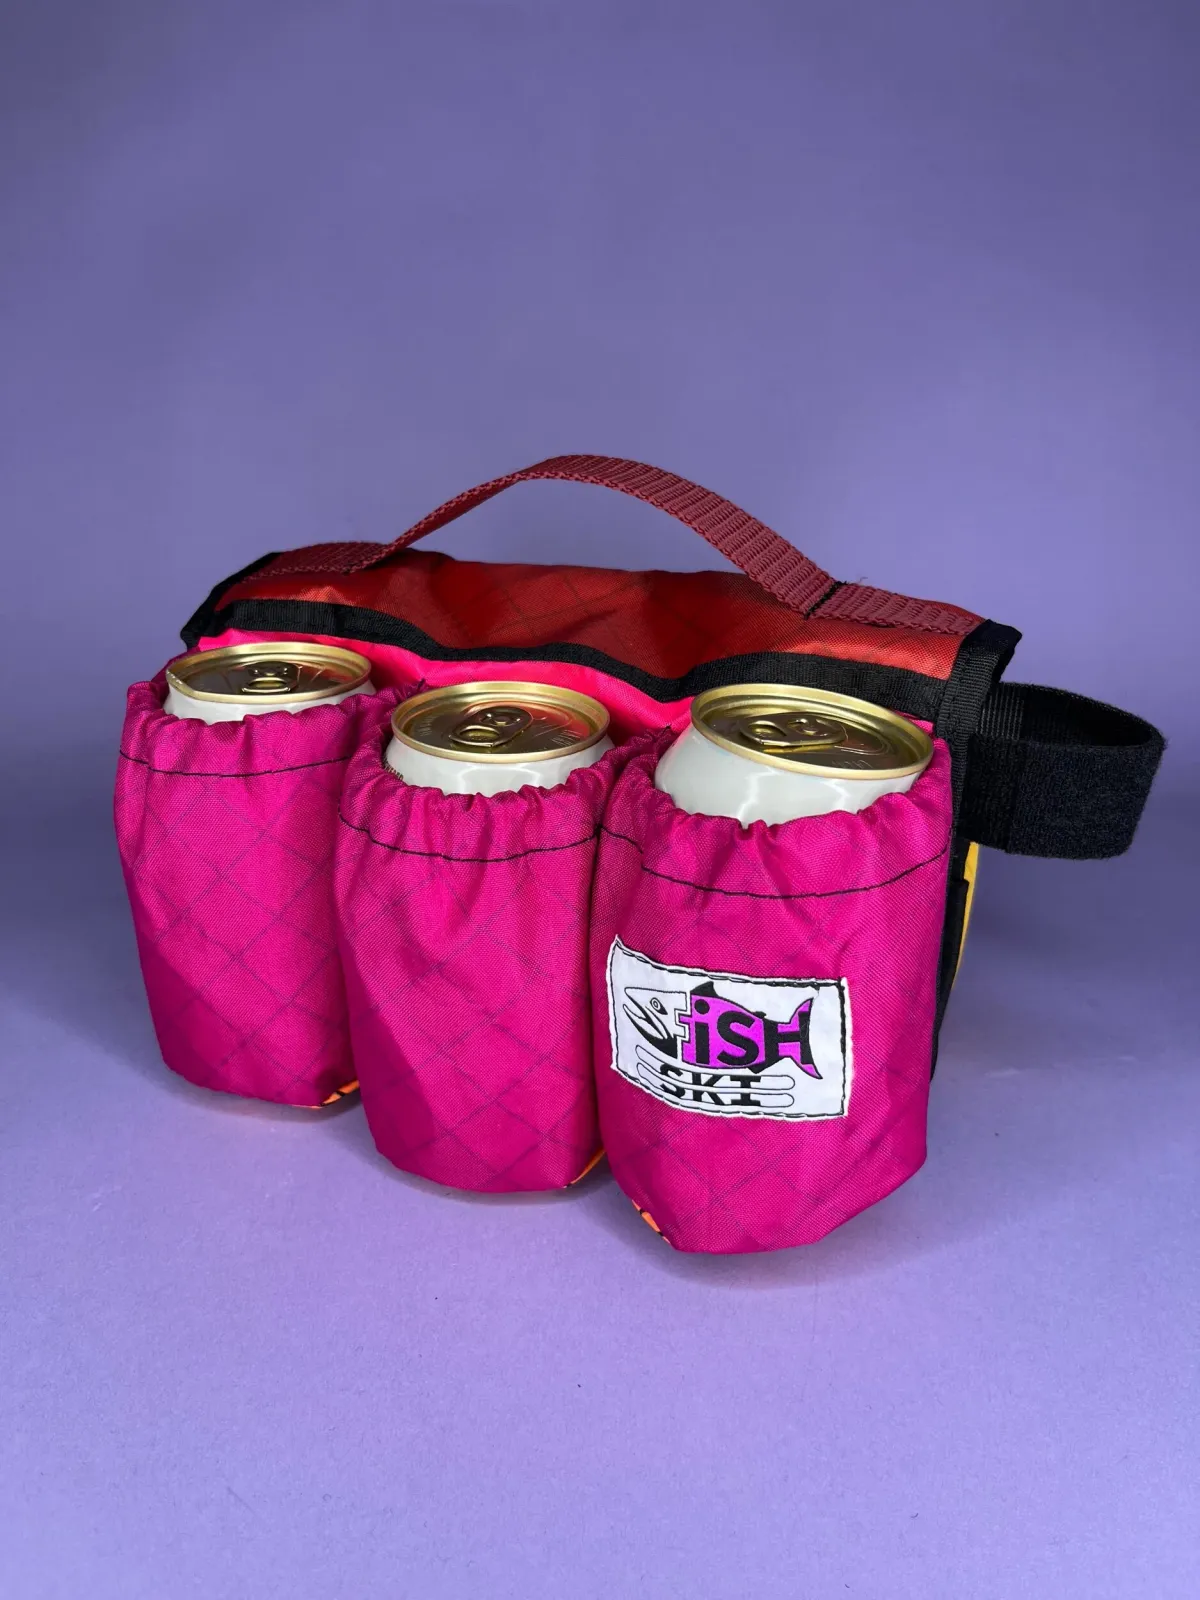 Fish Ski Designs 6-Pack Beverage Carrier